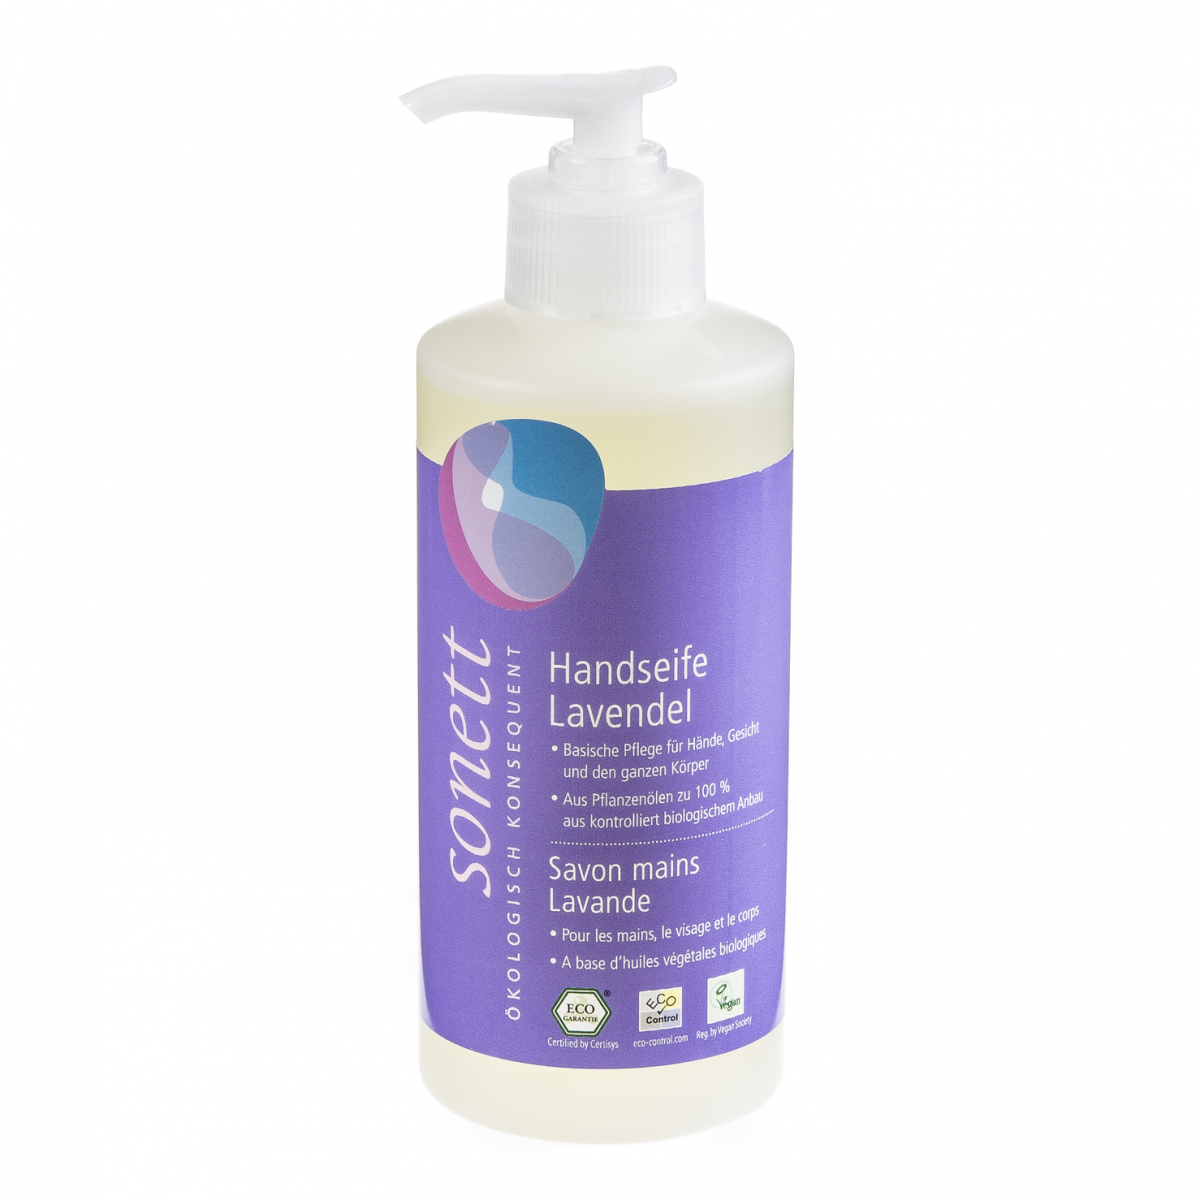 Handseife Lavendel, Pumpspender Flasche 300 ml/Plastik Einweg - Sonett